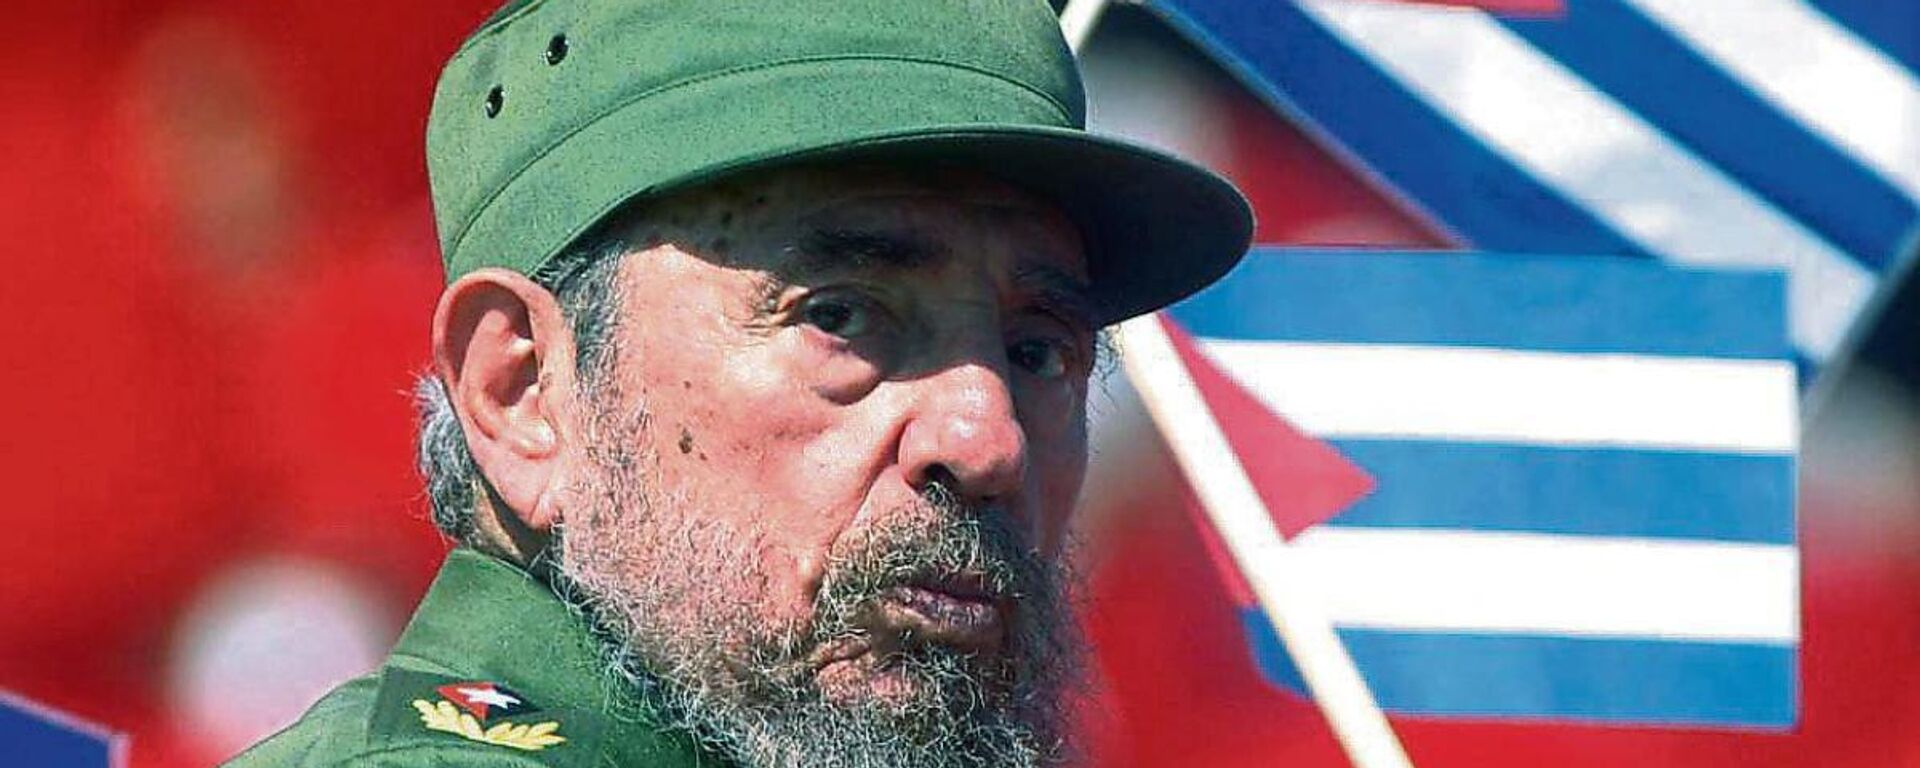 El líder de la Revolución cubana, Fidel Castro. - Sputnik Mundo, 1920, 25.11.2022